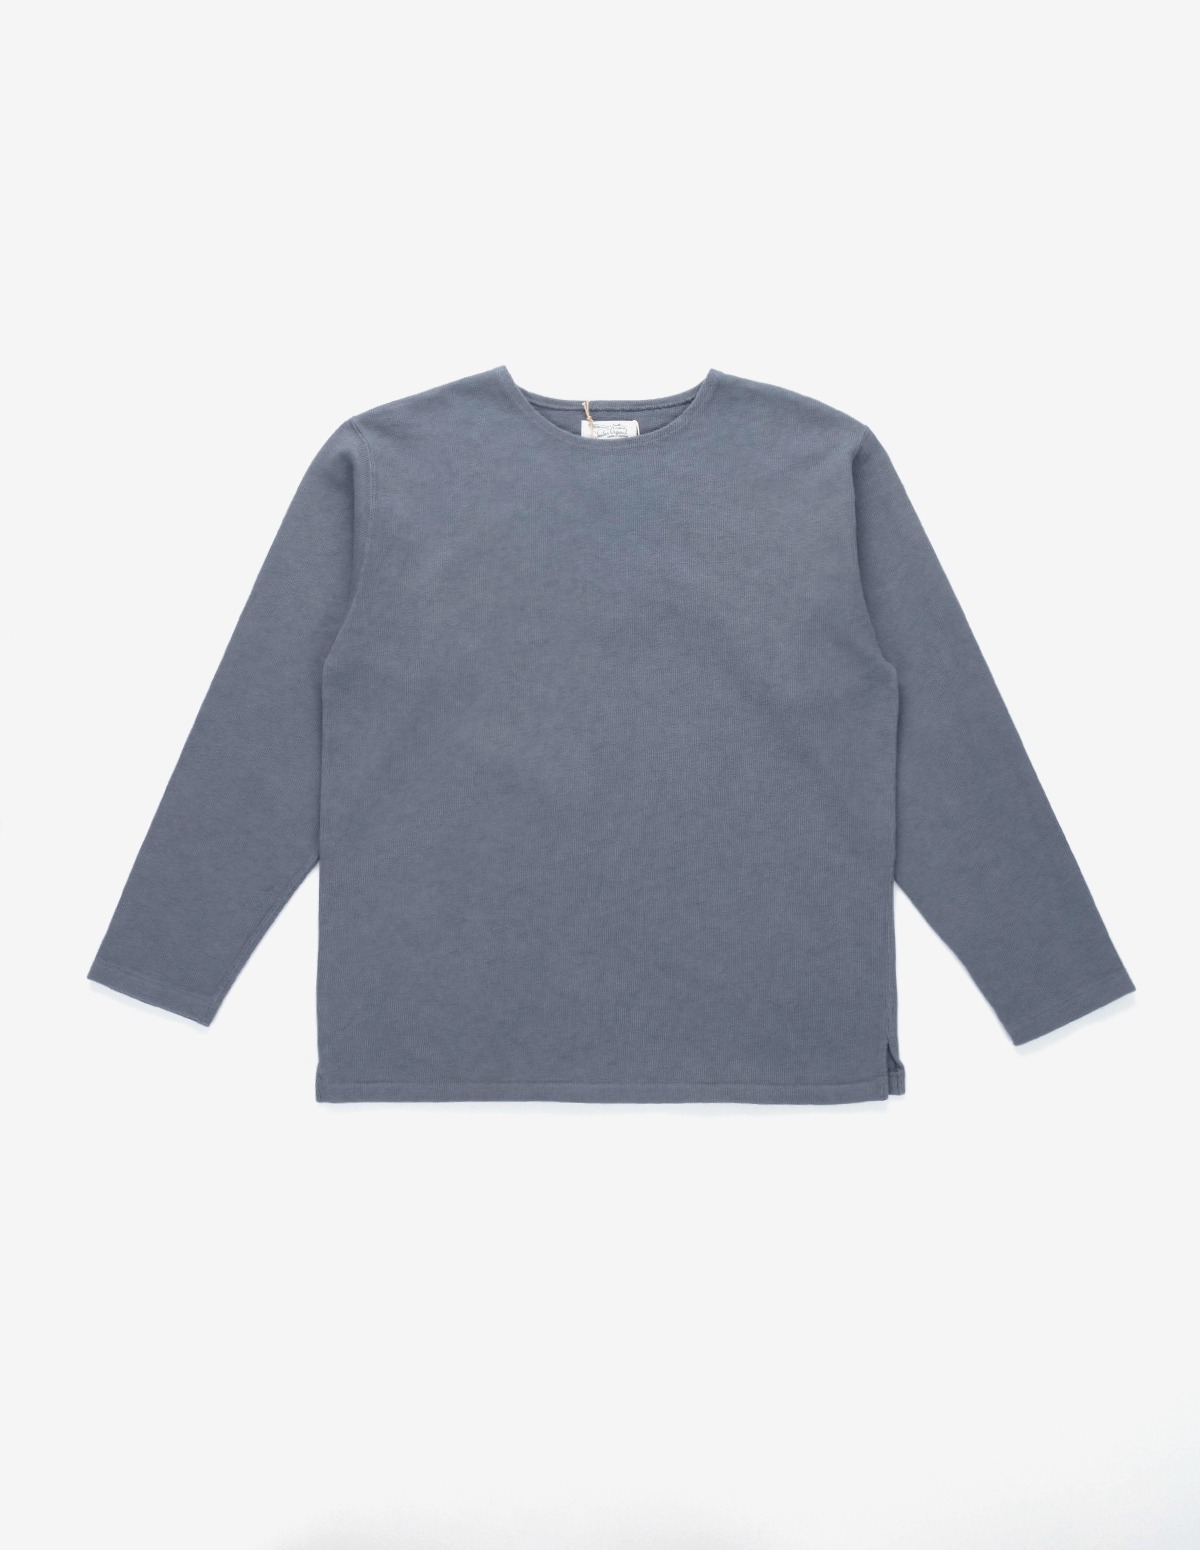 OR-9074 Basque Shirt (Grey)